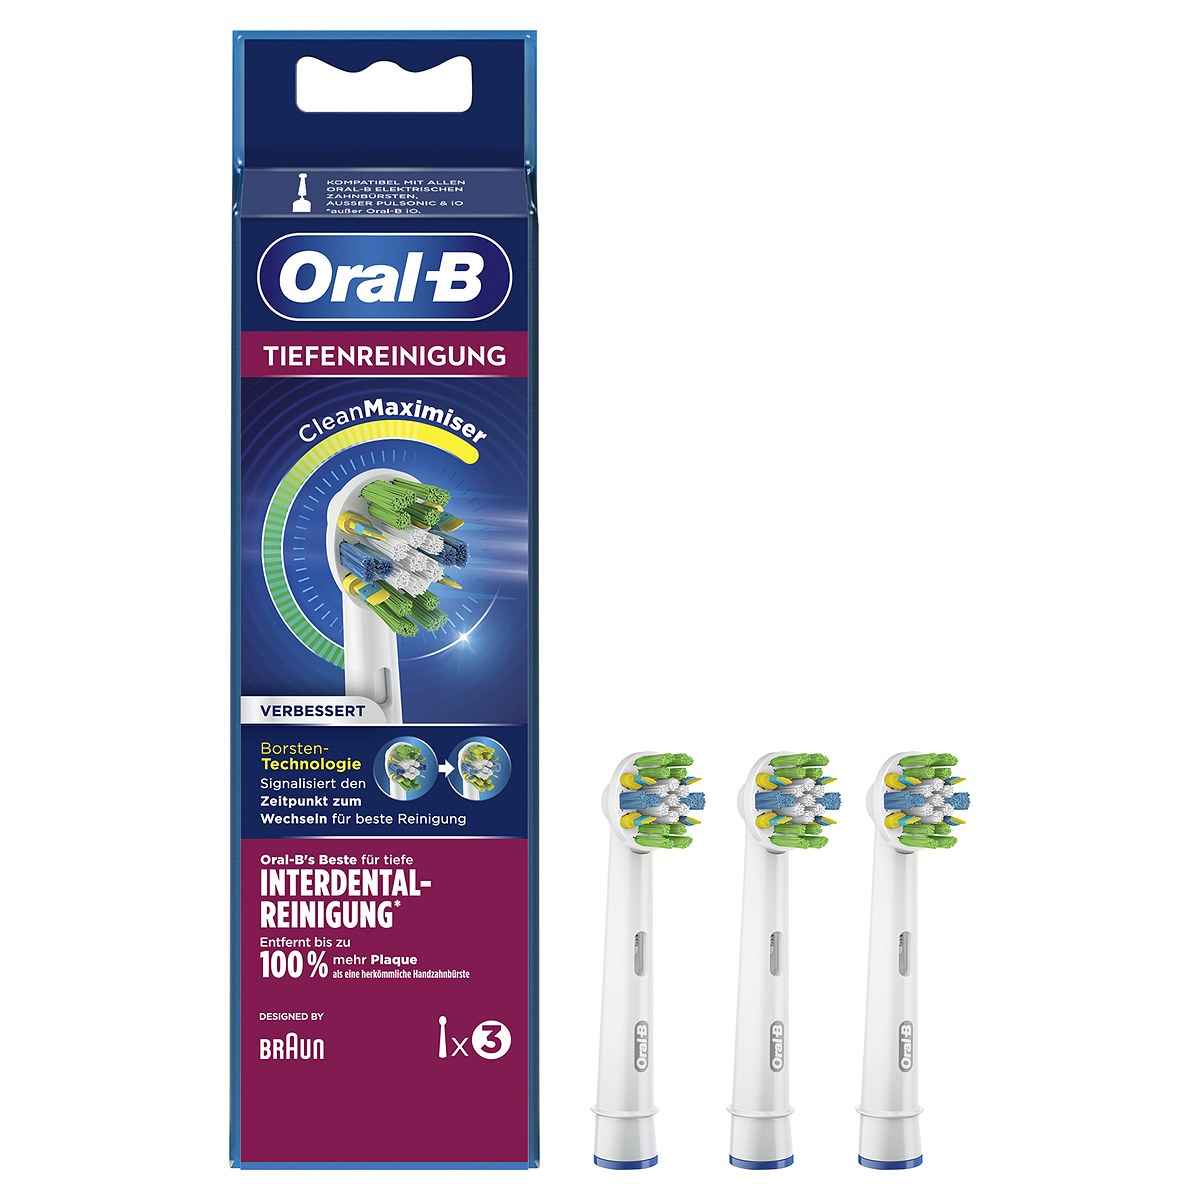 Oral-B Aufsteckbürsten Tiefenreinigung mit CleanMaximiser-Technologie